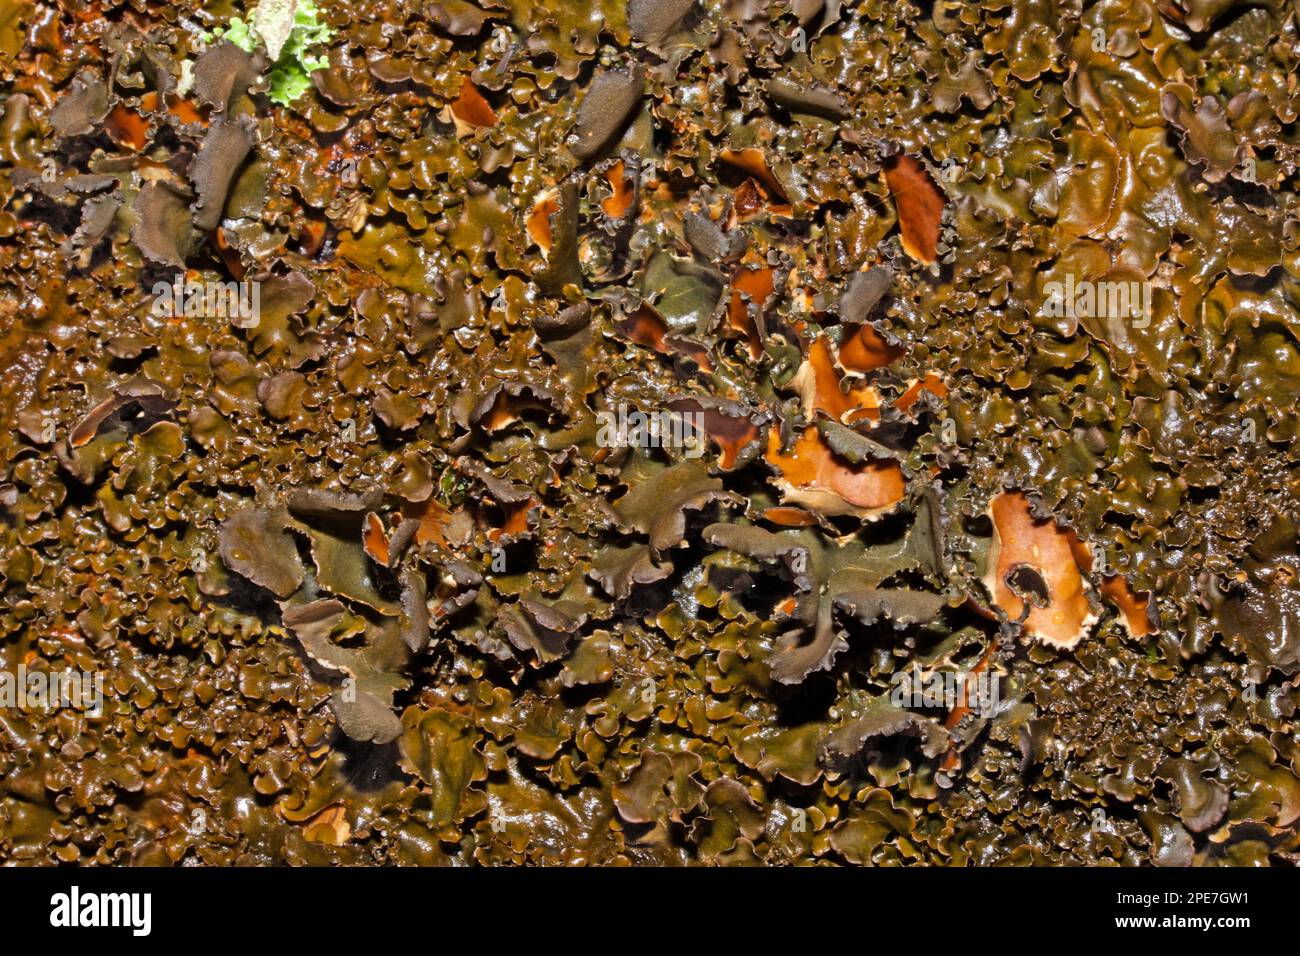 Le lichen Nephroma laevigatum se trouve dans les anciennes terres boisées océaniques et est classé comme une espèce indicateur de 'vieille forêt'. Il dispose d'une distribution mondiale, Banque D'Images